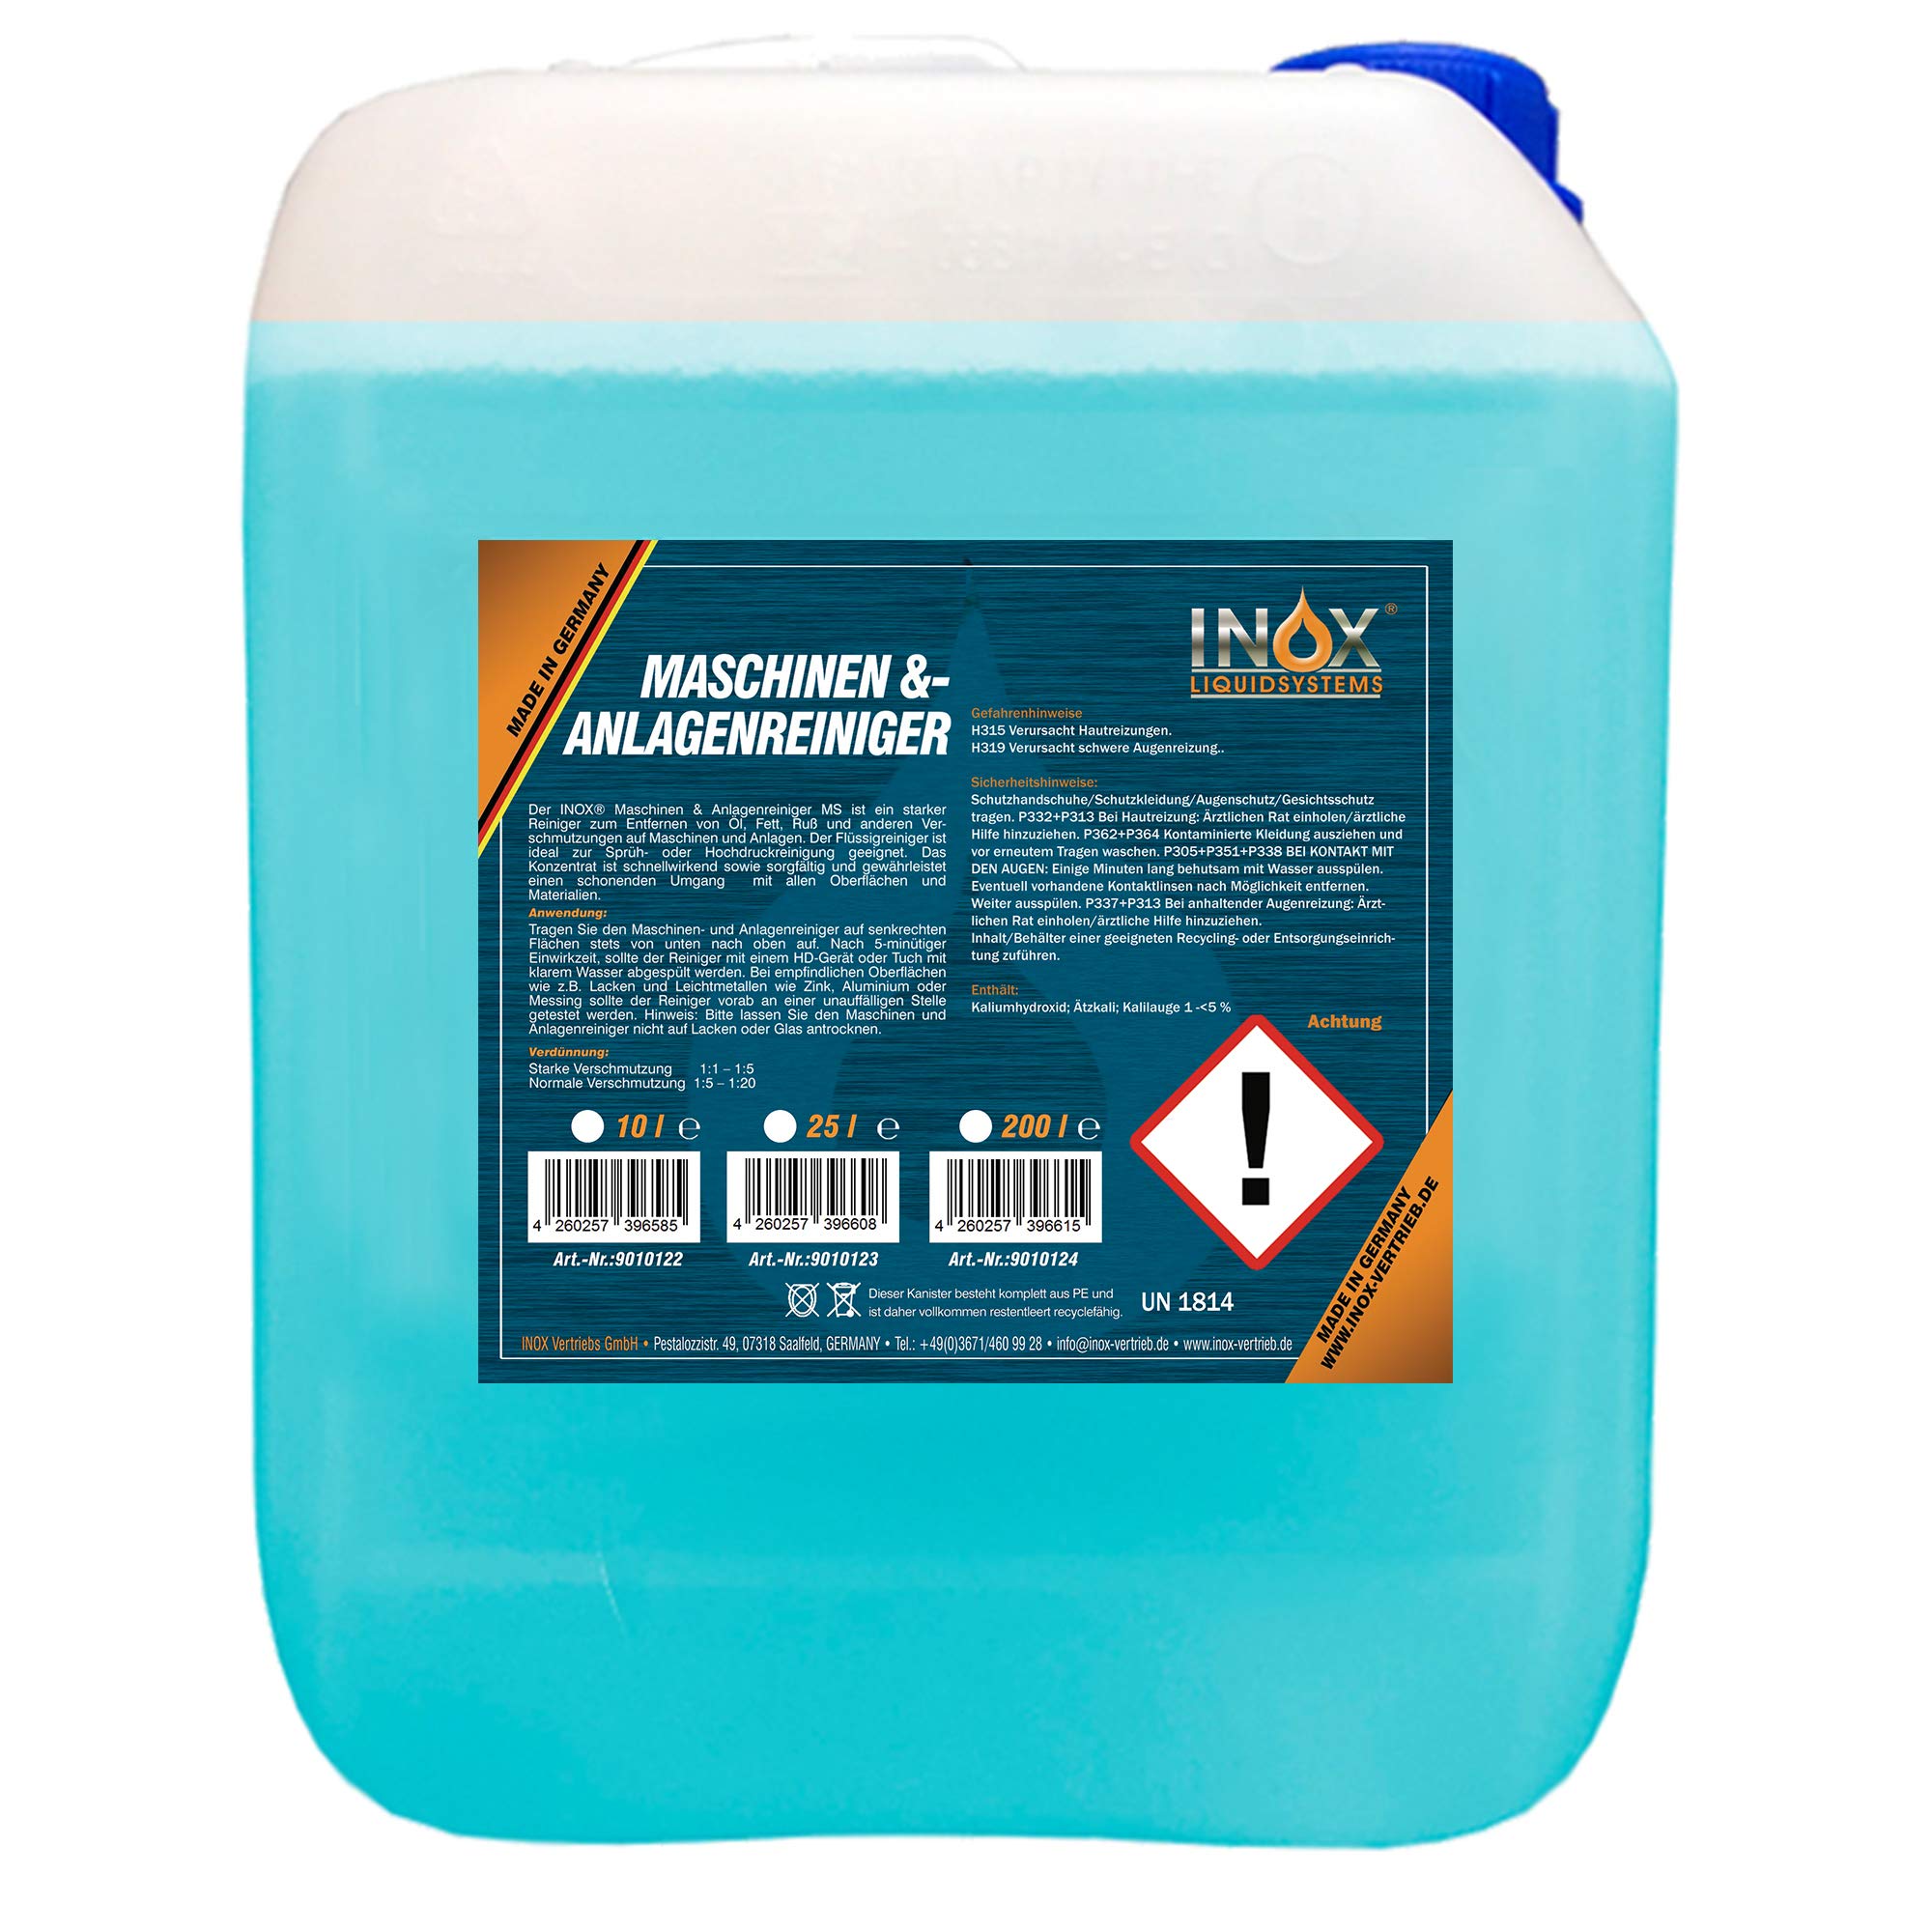 INOX® MS Maschinen- und Anlagenreiniger Konzentrat, 10L - effektiver Industriereiniger zum Entfernen von Öl, Fett und Ruß